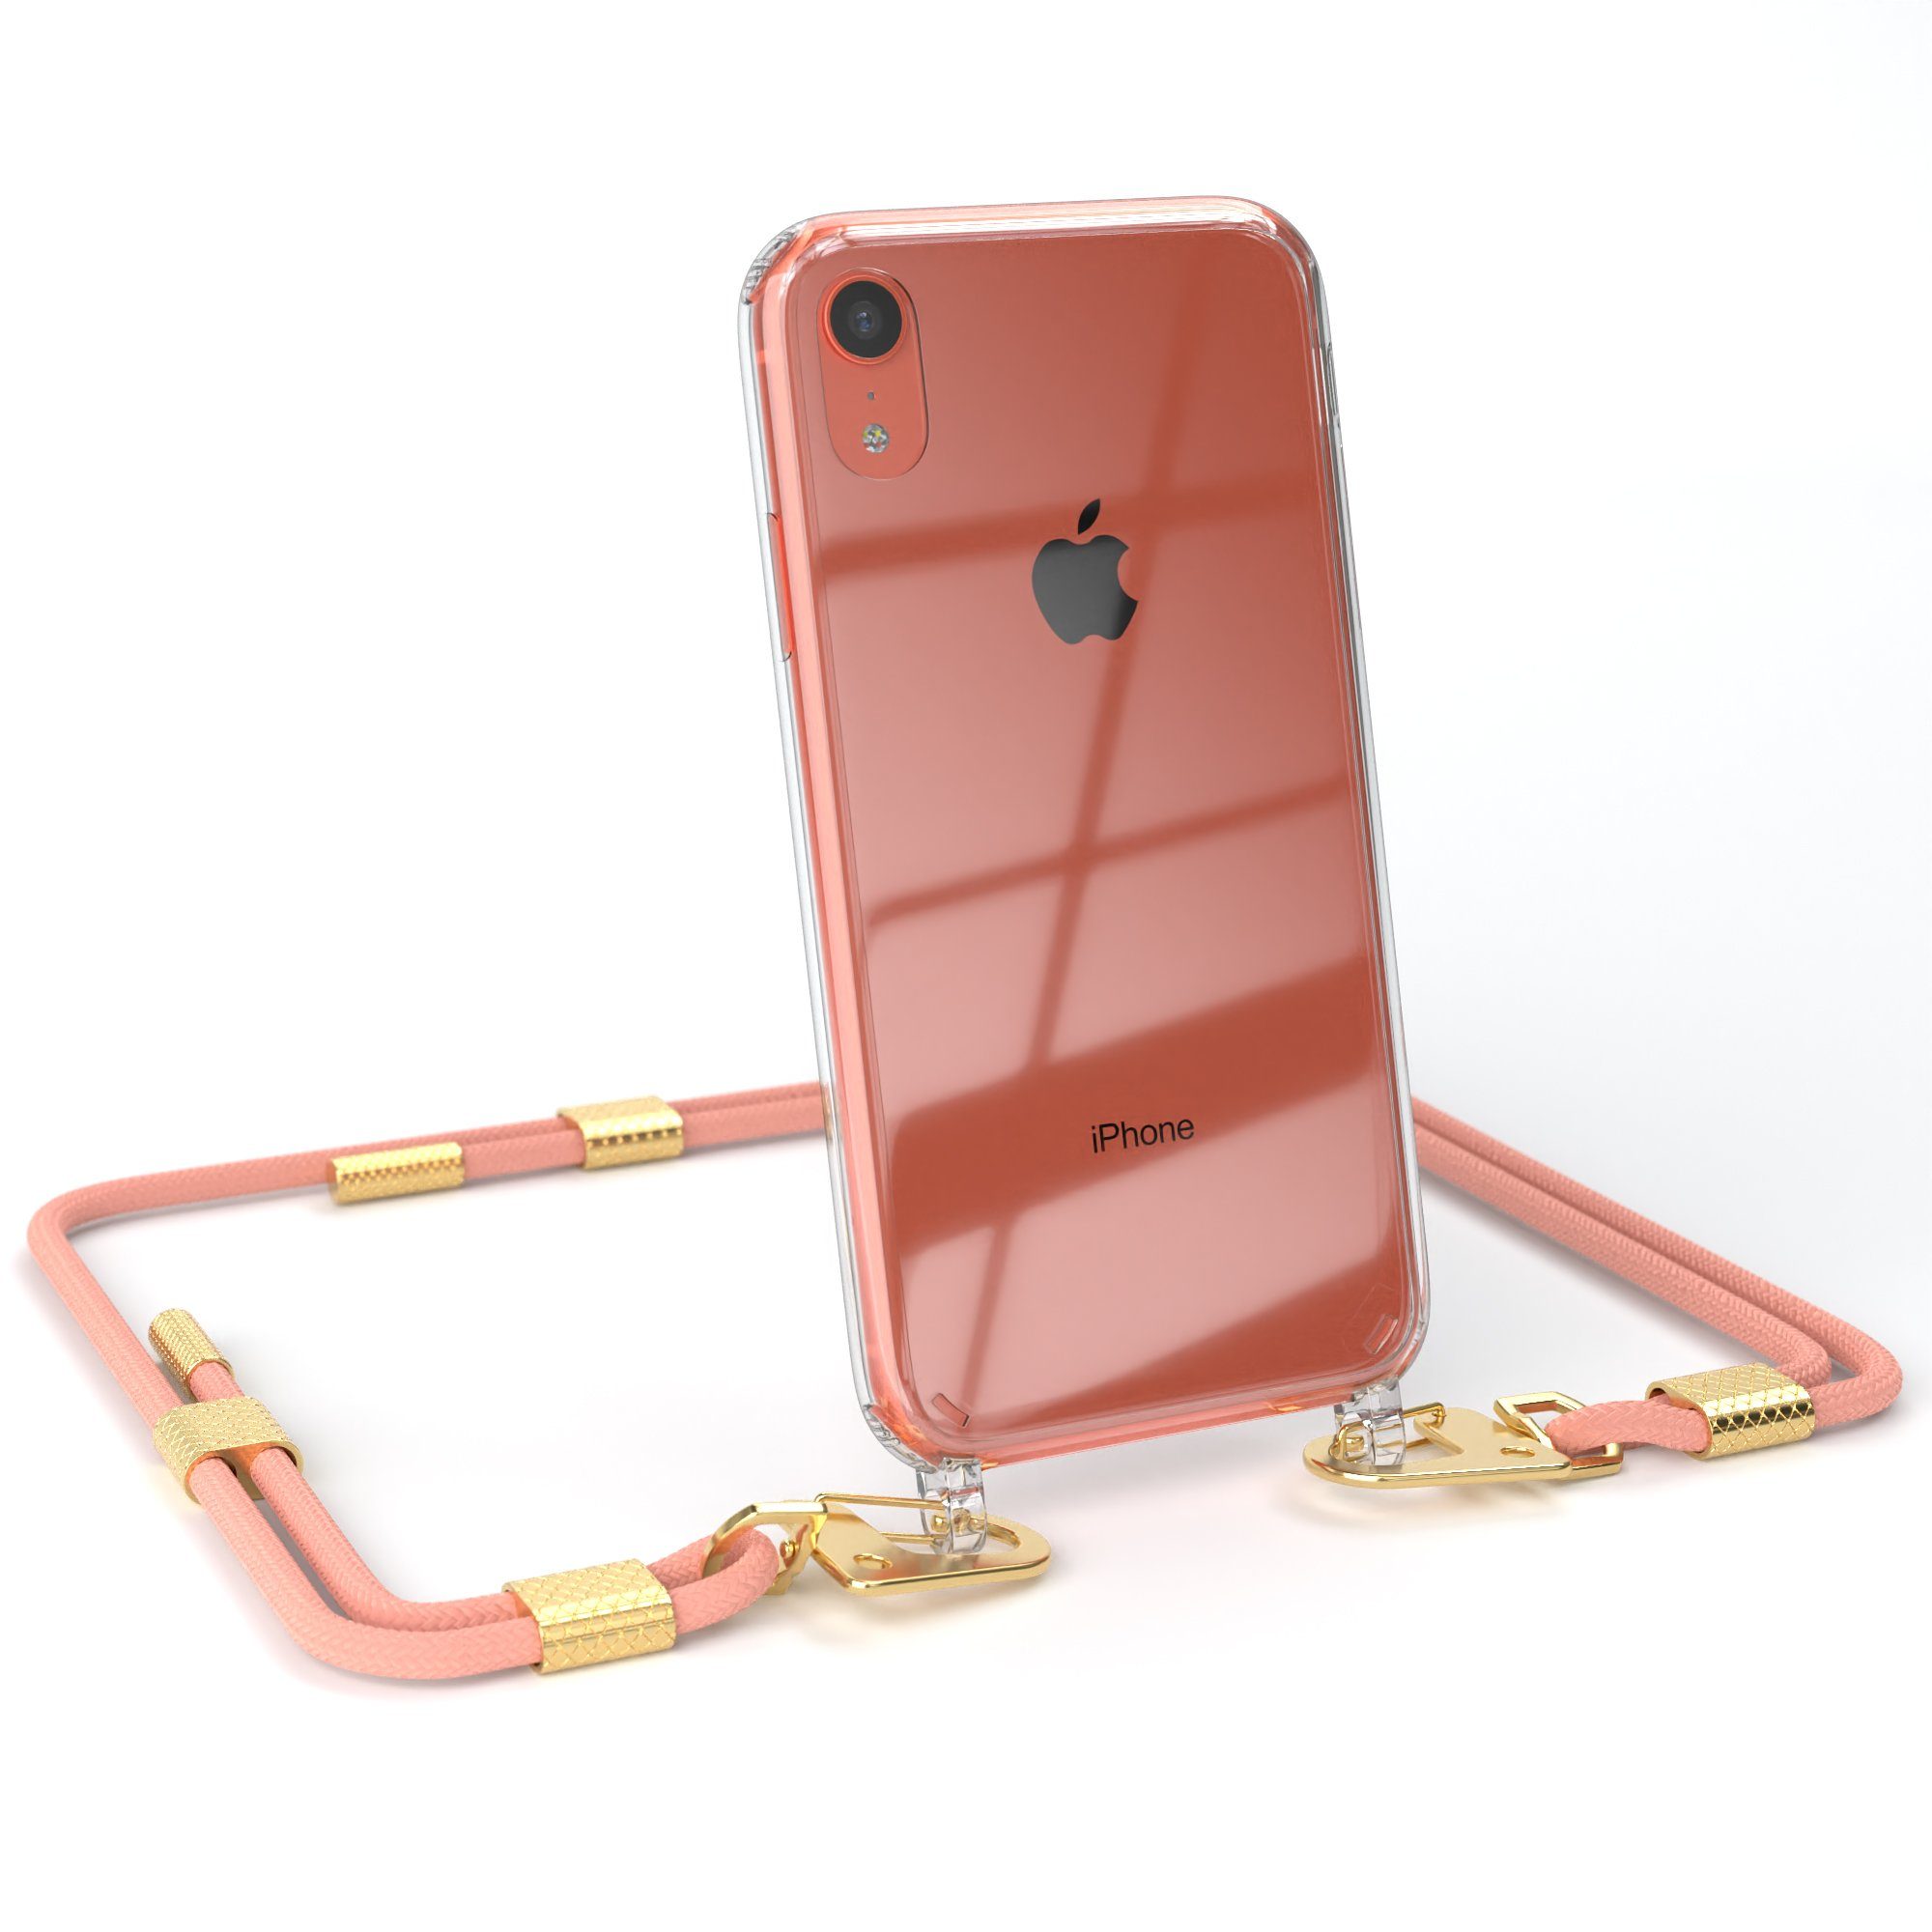 EAZY CASE Handykette Silikonhülle mit runder Kette für Apple iPhone XR 6,1 Zoll, Handytasche durchsichtige Silikon Hülle mit Umhängeband Altrosa Coral